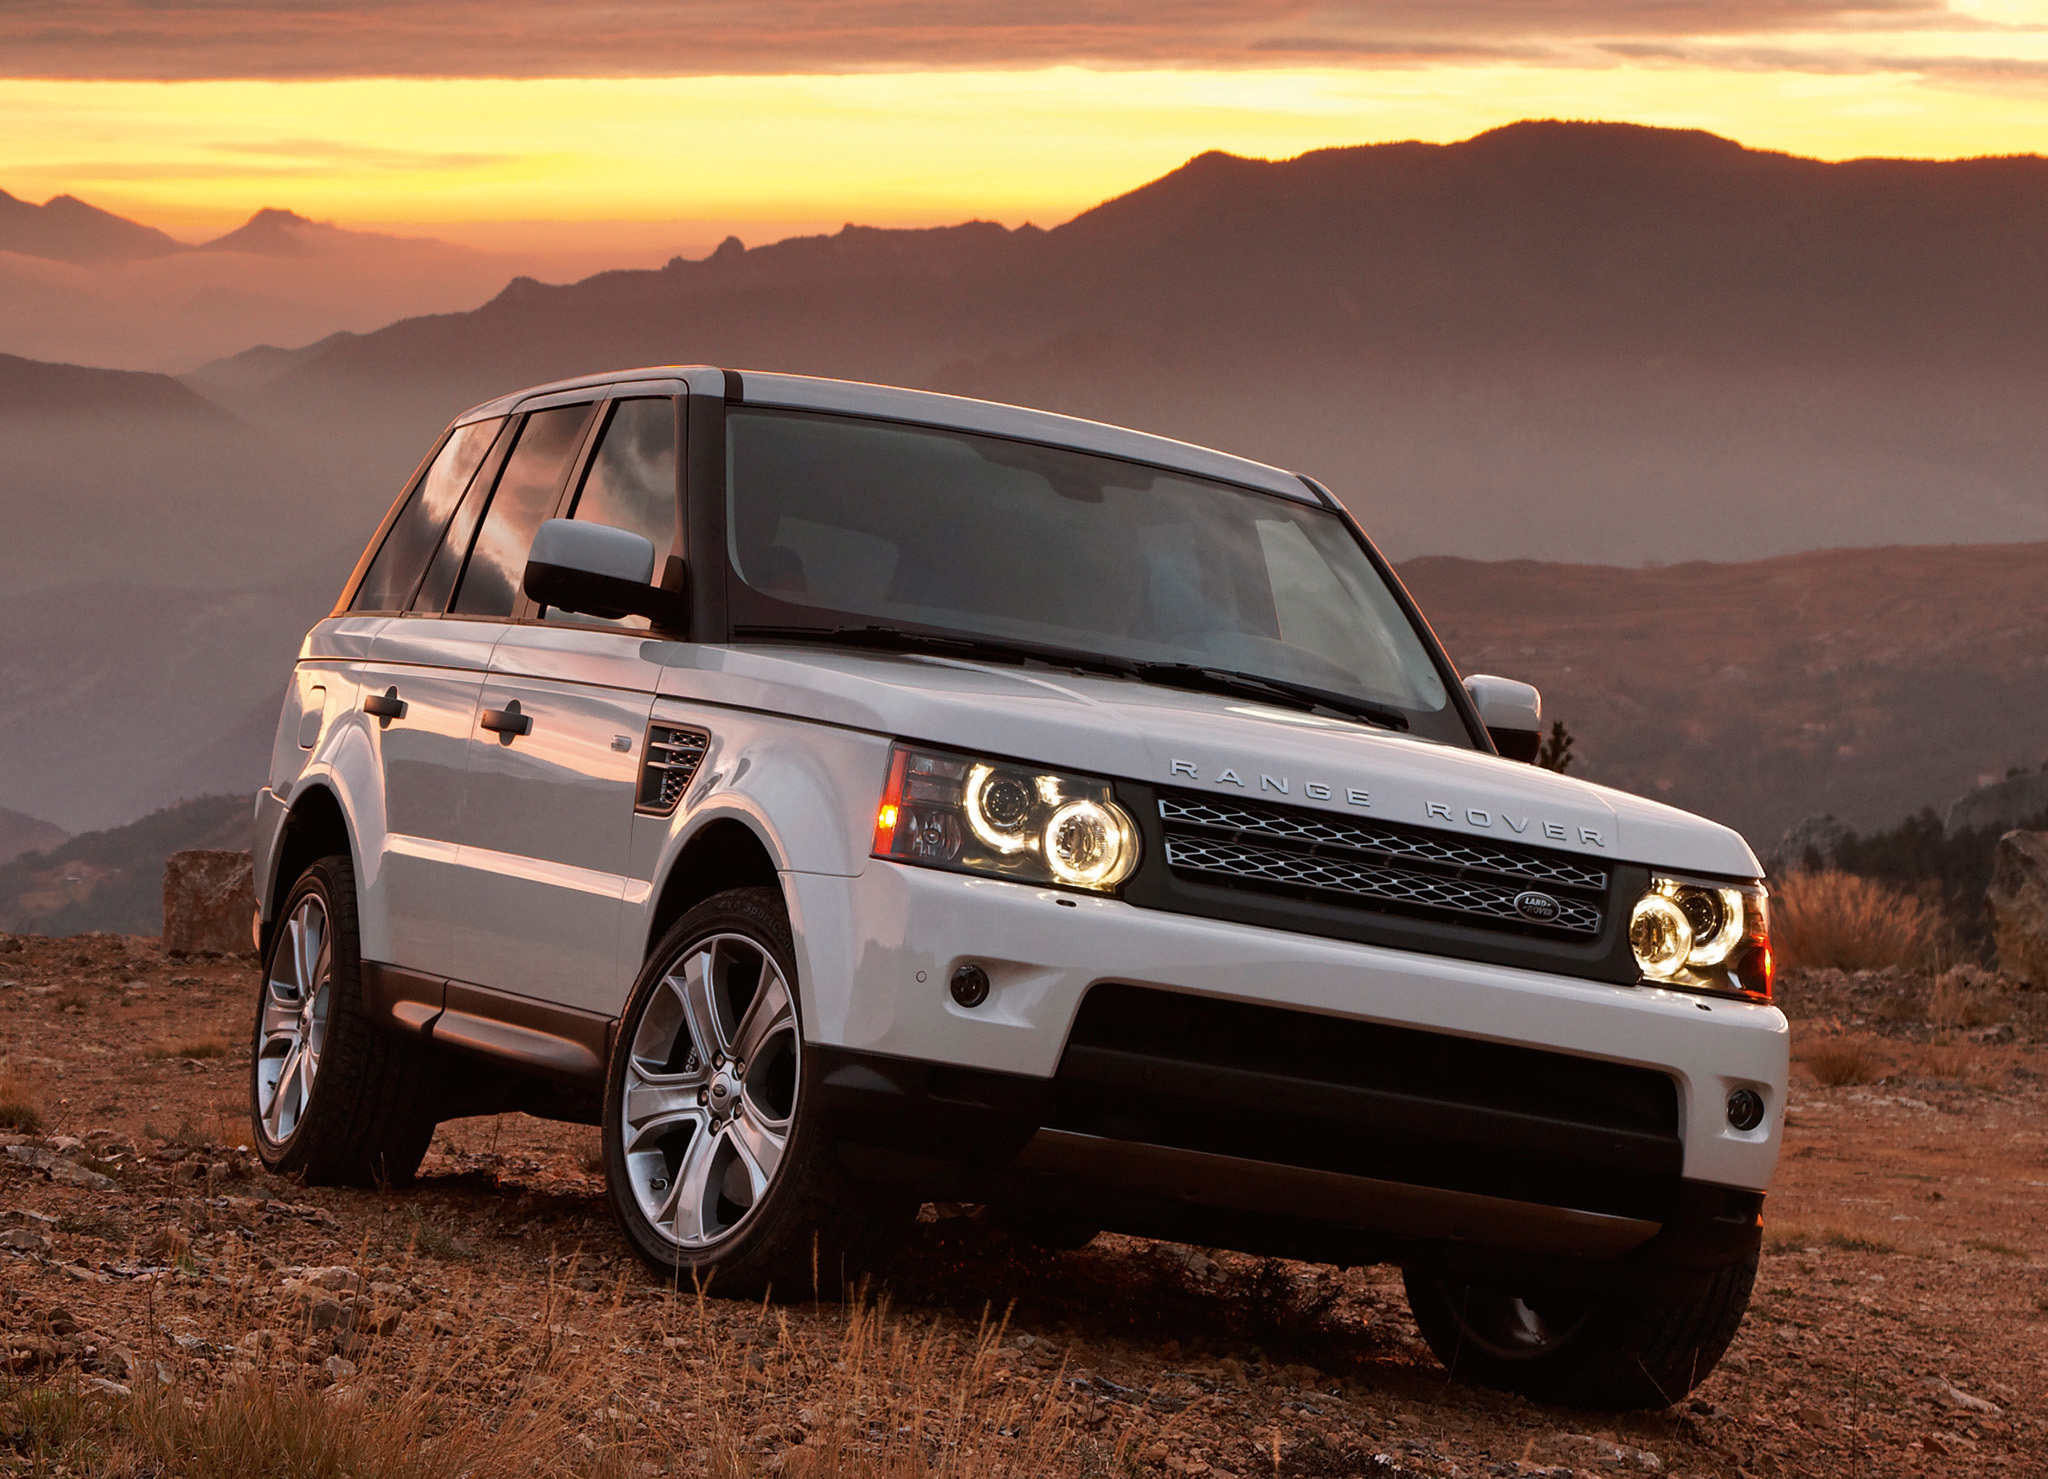 Автоновости: Range Rover выгодное спецпредложение. Fiat построил завод и т.д.